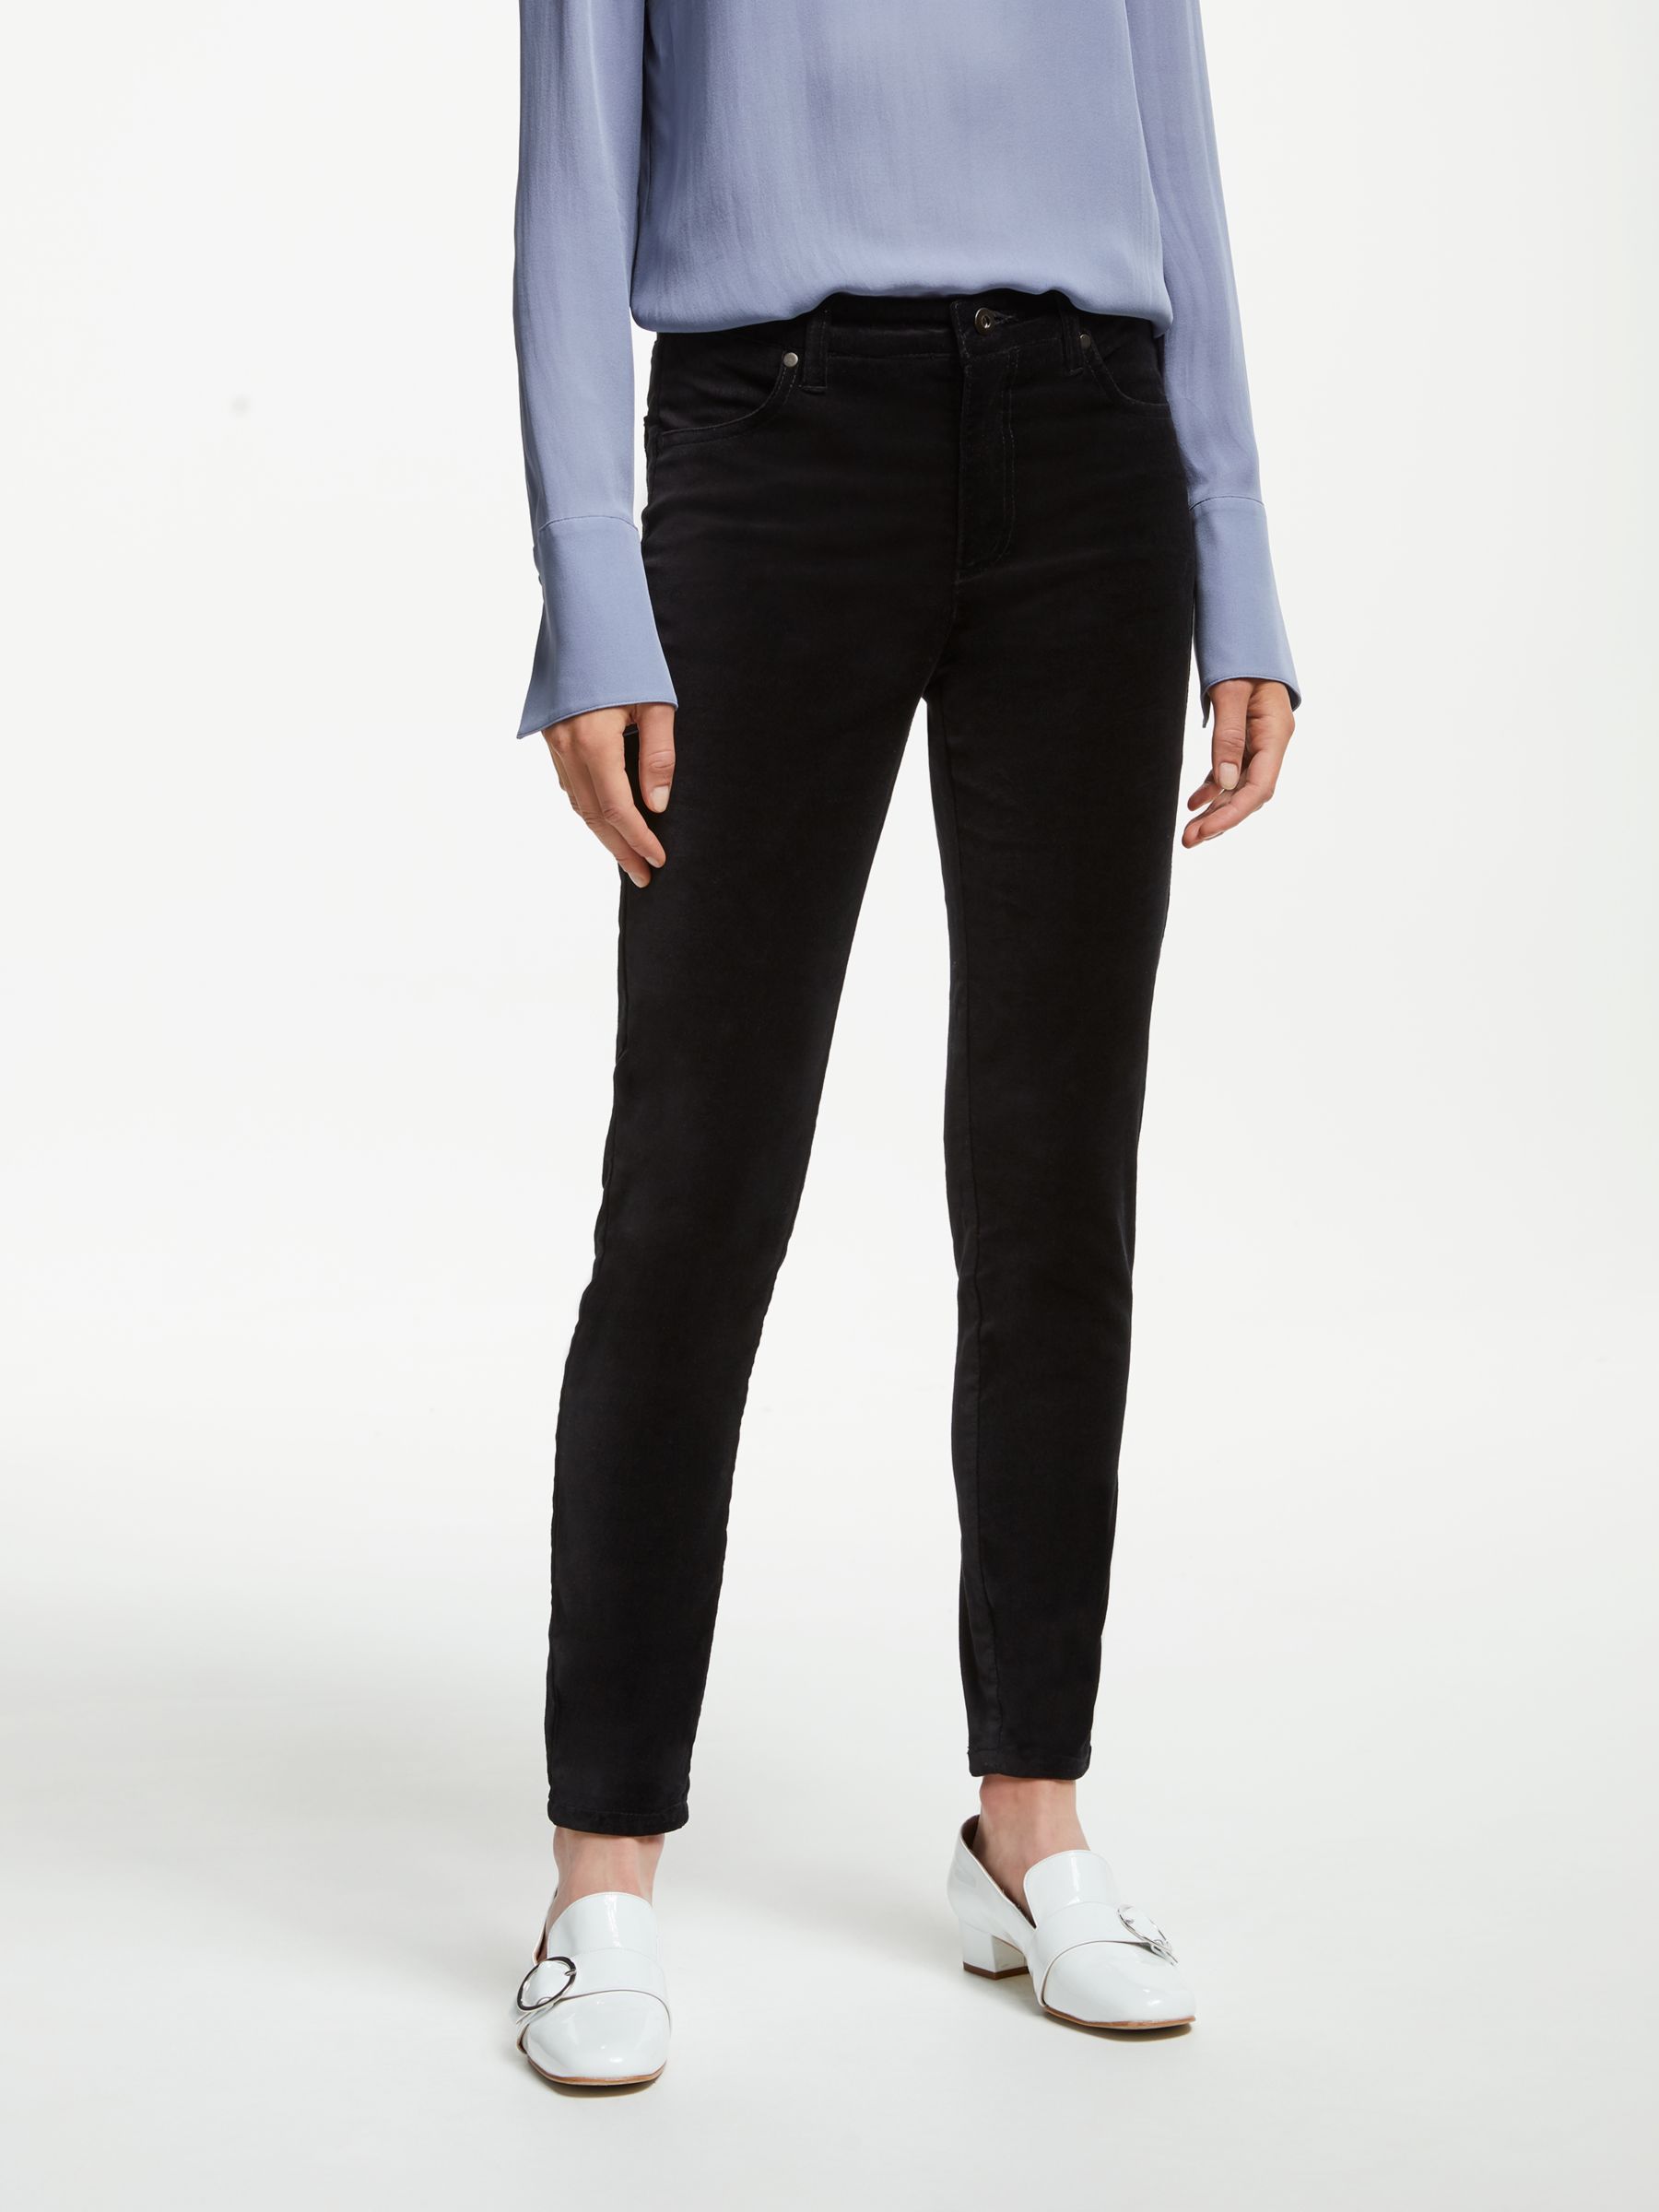 John Lewis & Partners Velvet Skinny Jeans | Black at John Lewis & Partners